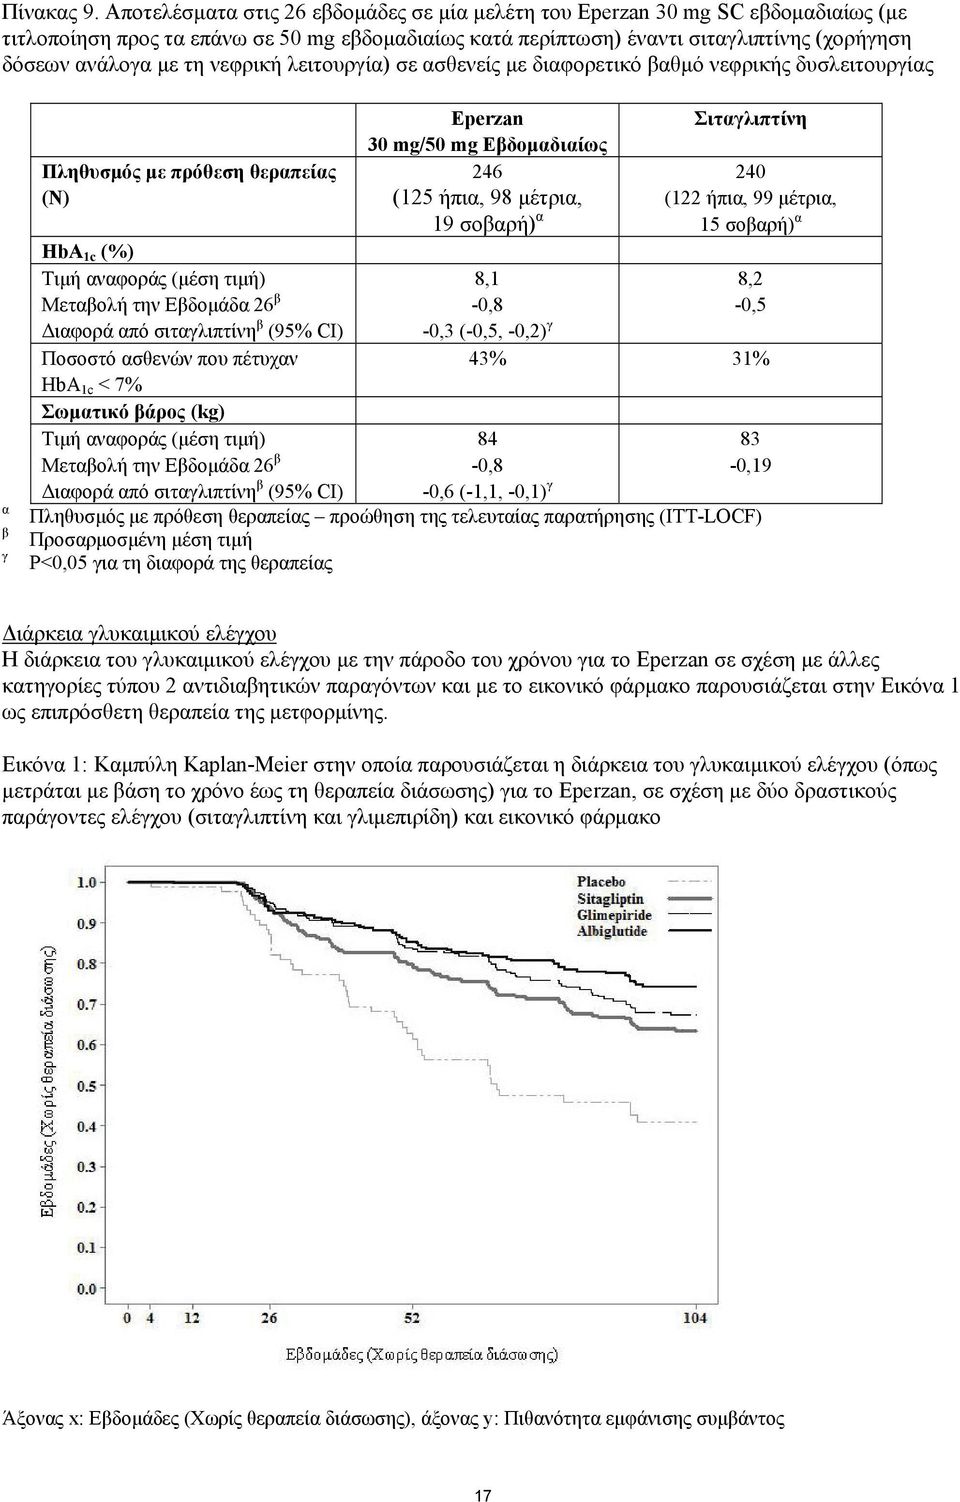 νεφρική λειτουργία) σε ασθενείς με διαφορετικό βαθμό νεφρικής δυσλειτουργίας α β γ Πληθυσμός με πρόθεση θεραπείας (Ν) HbA 1c (%) Τιμή αναφοράς (μέση τιμή) Μεταβολή την Εβδομάδα 26 β Διαφορά από